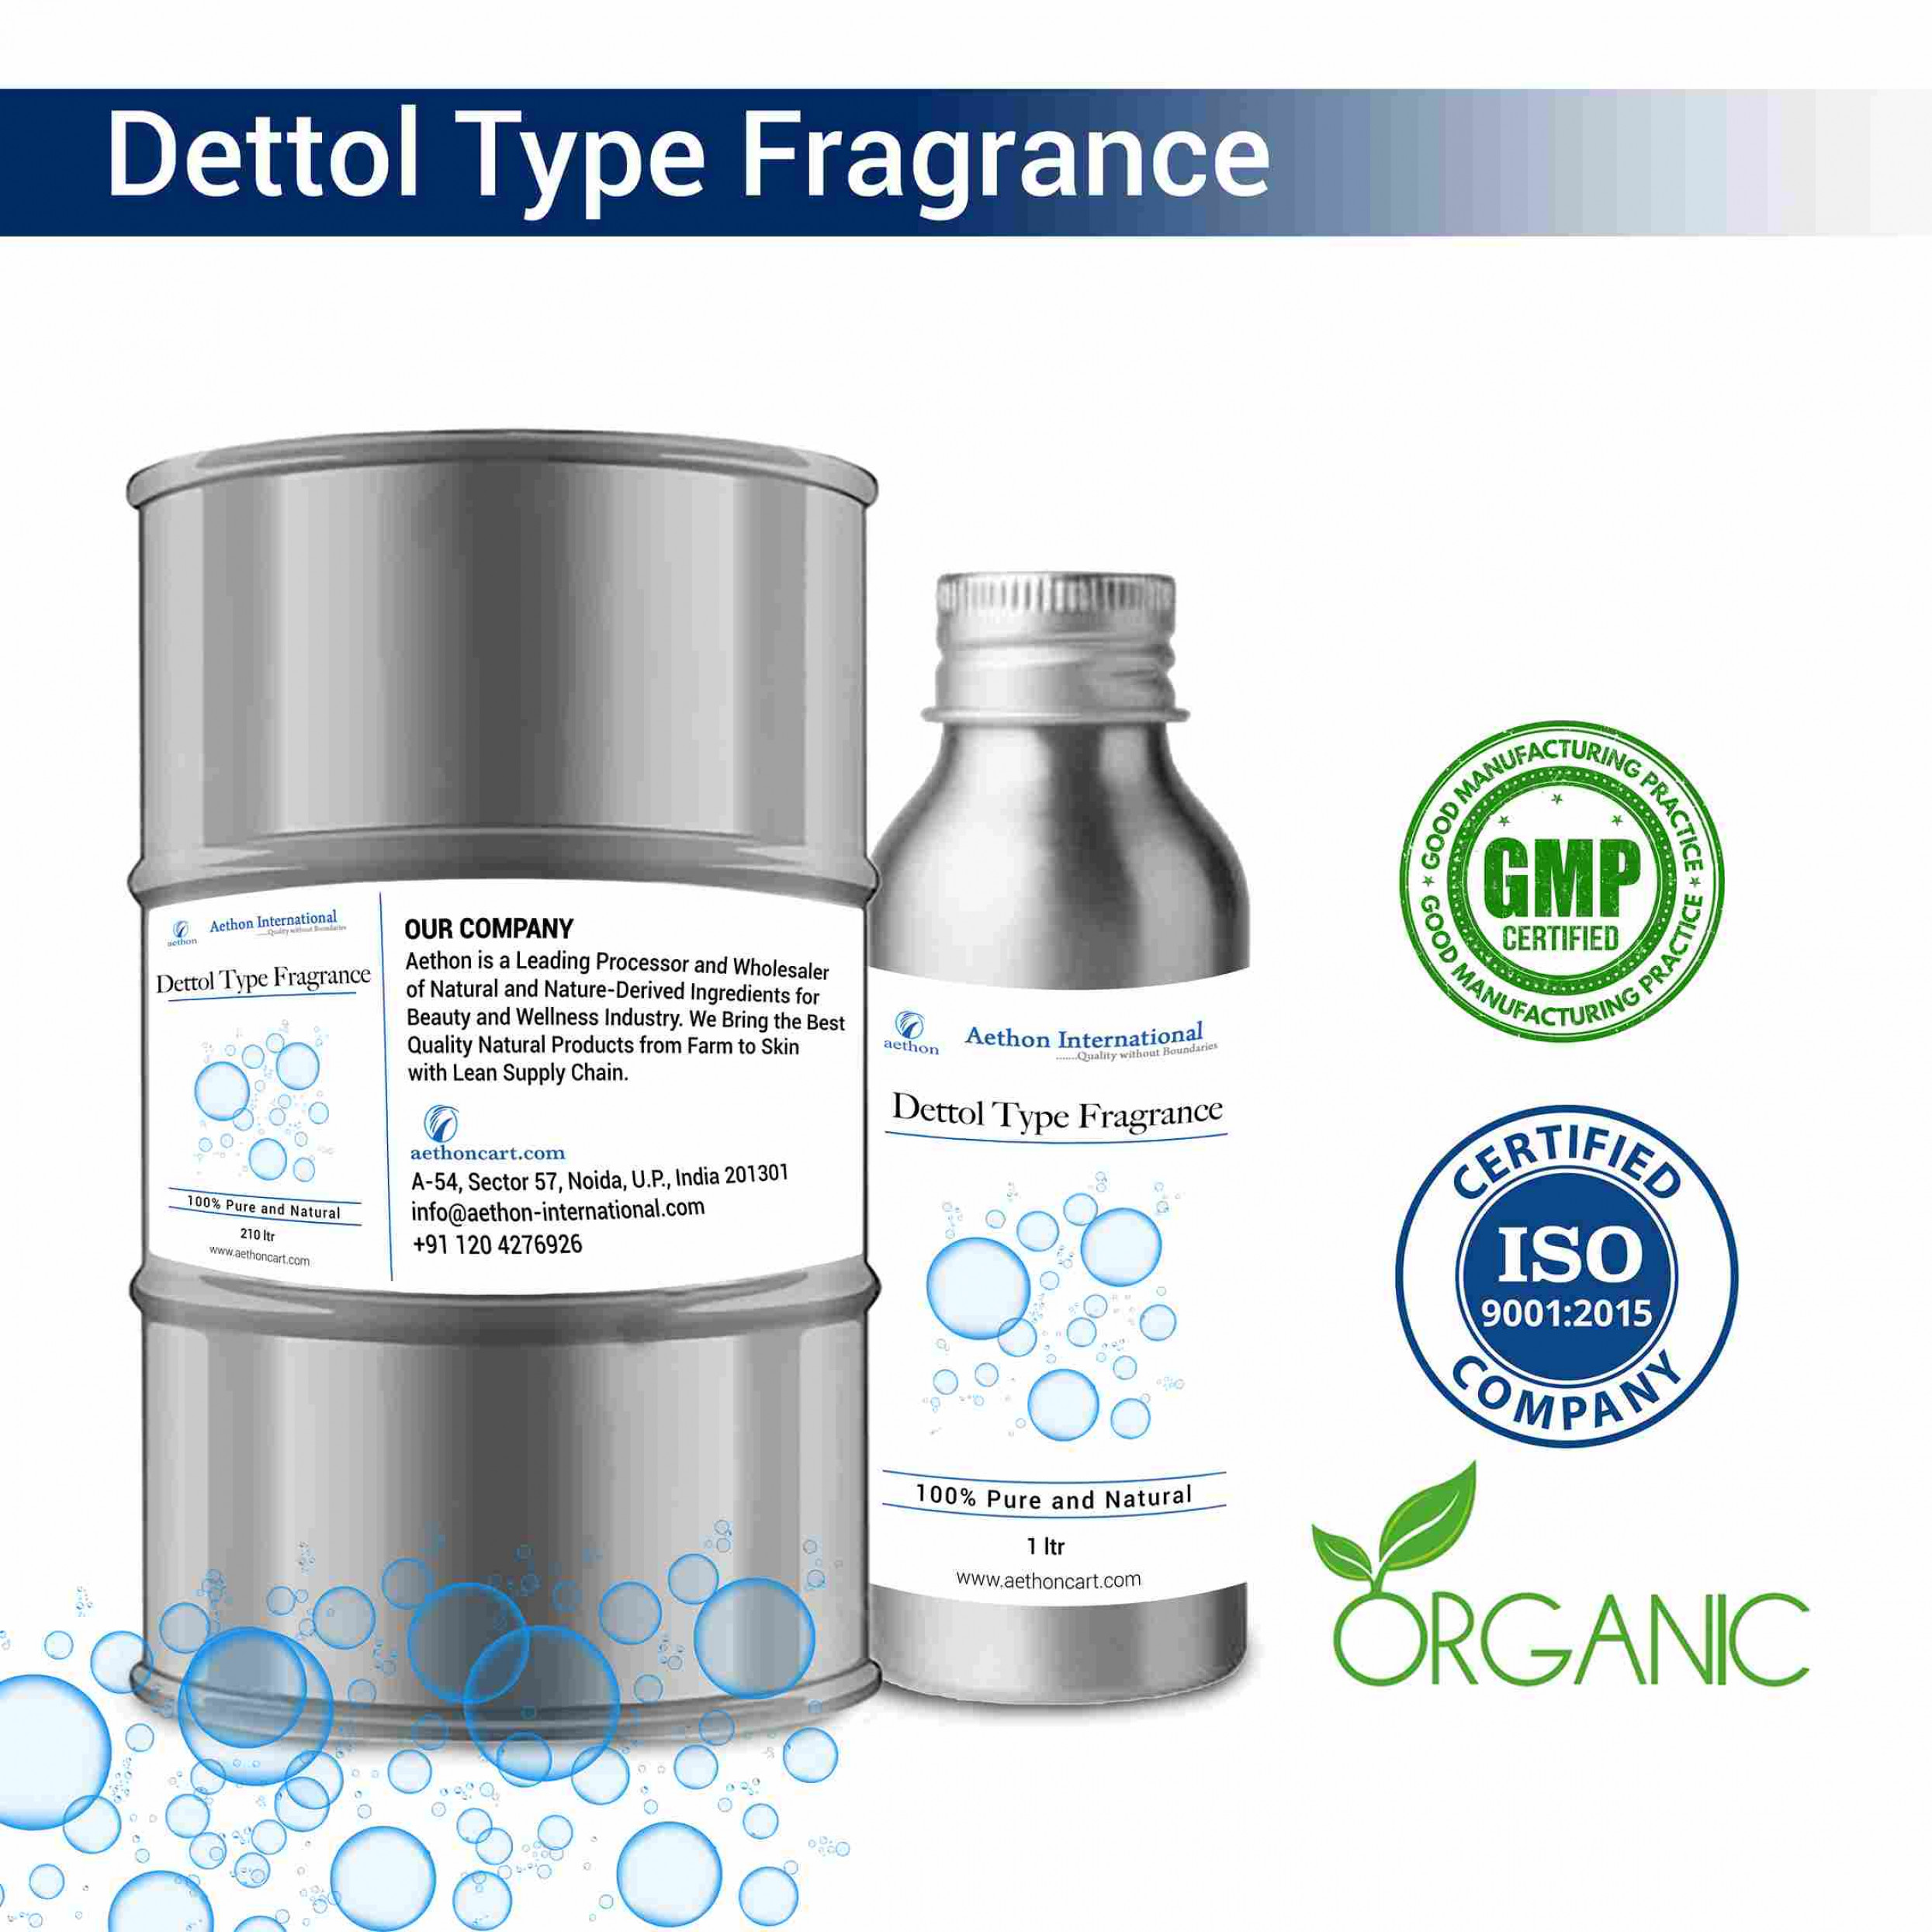 Dettol Type Fragrance